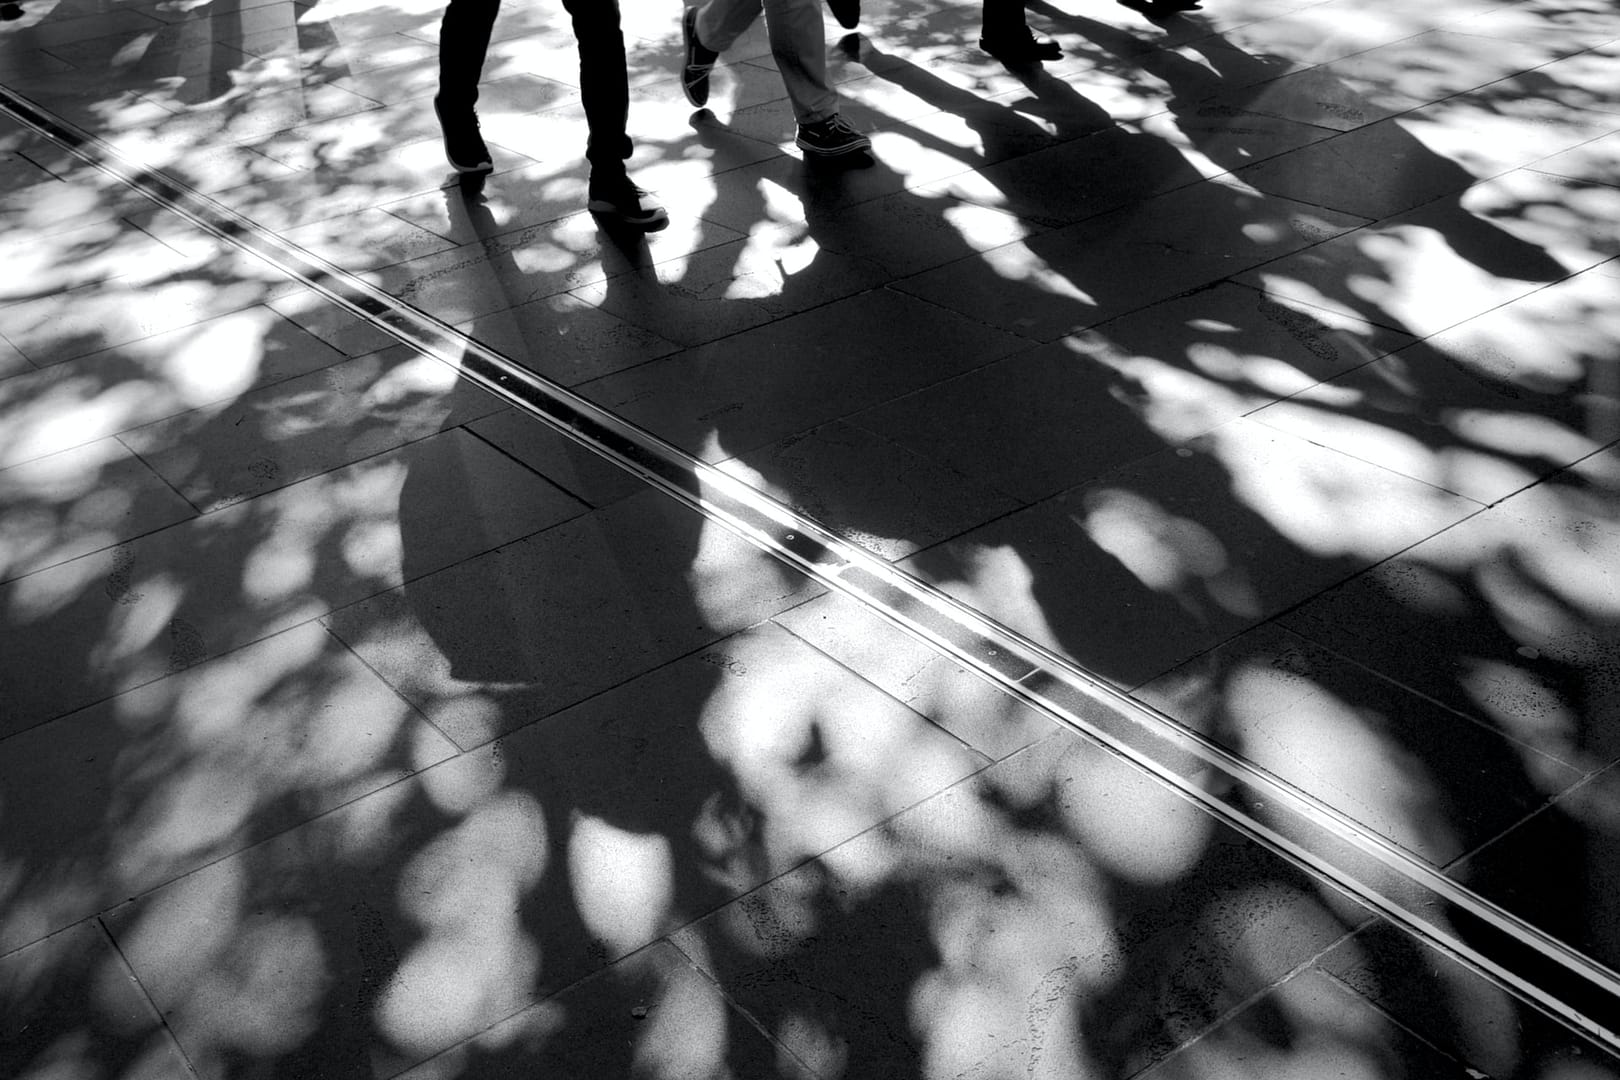 shadows of people walking in the street